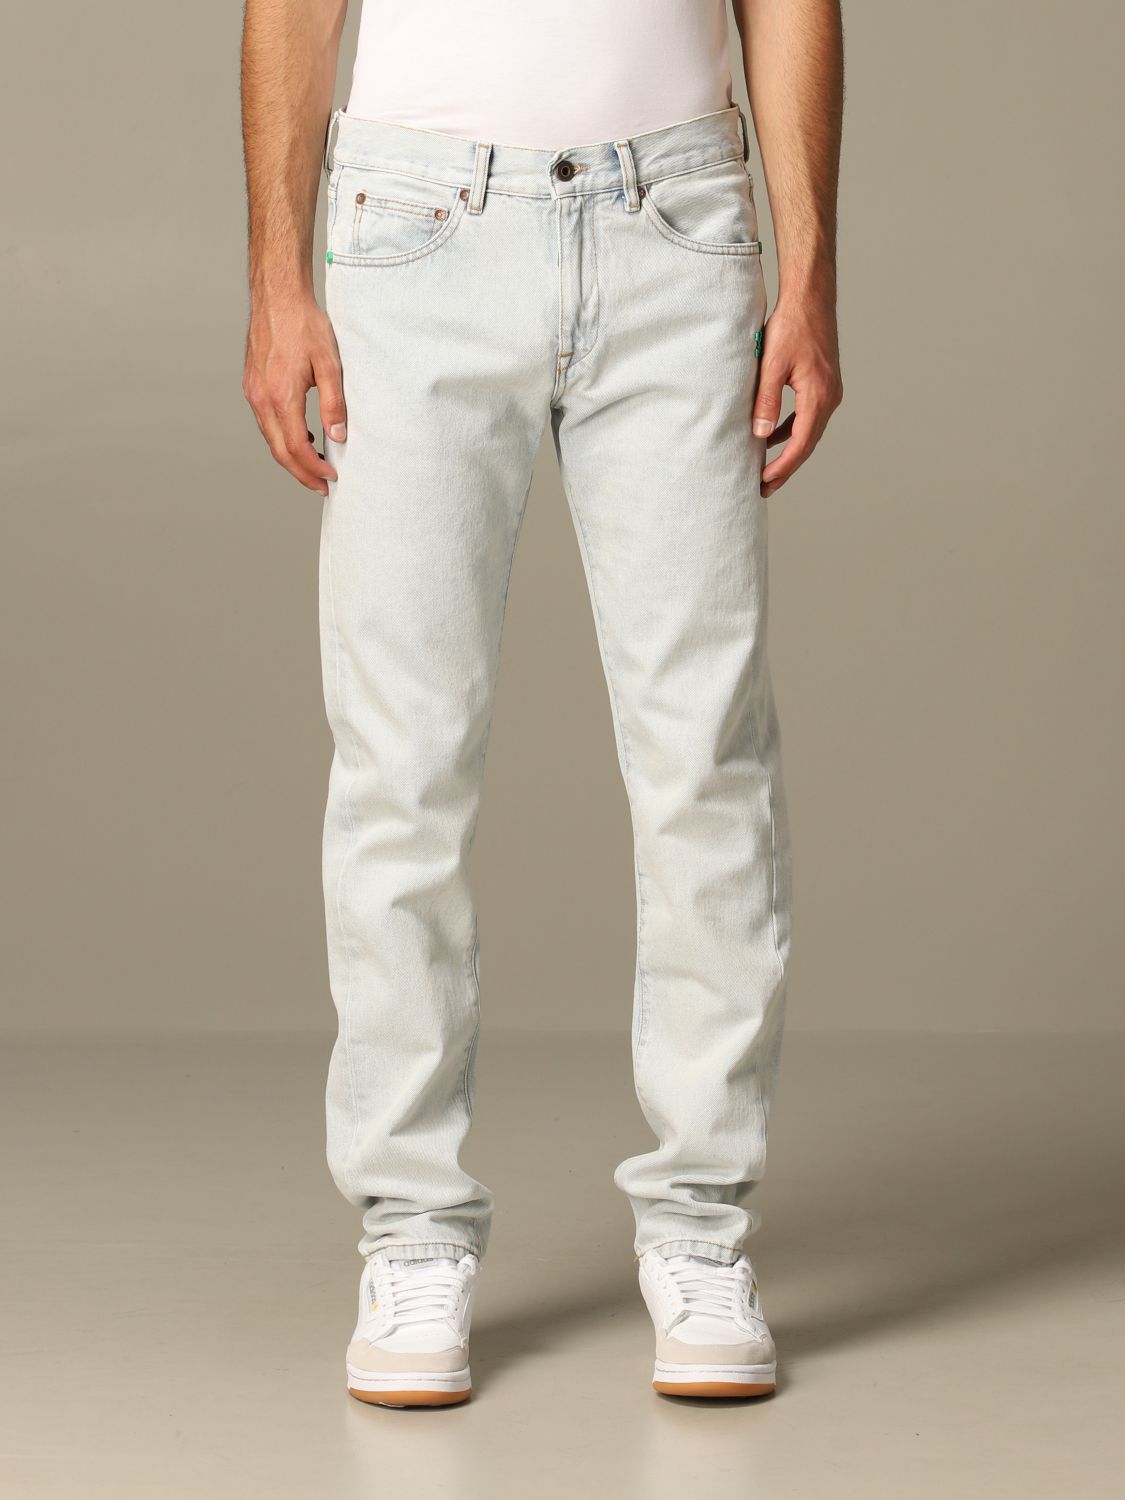 buy white jeans mens